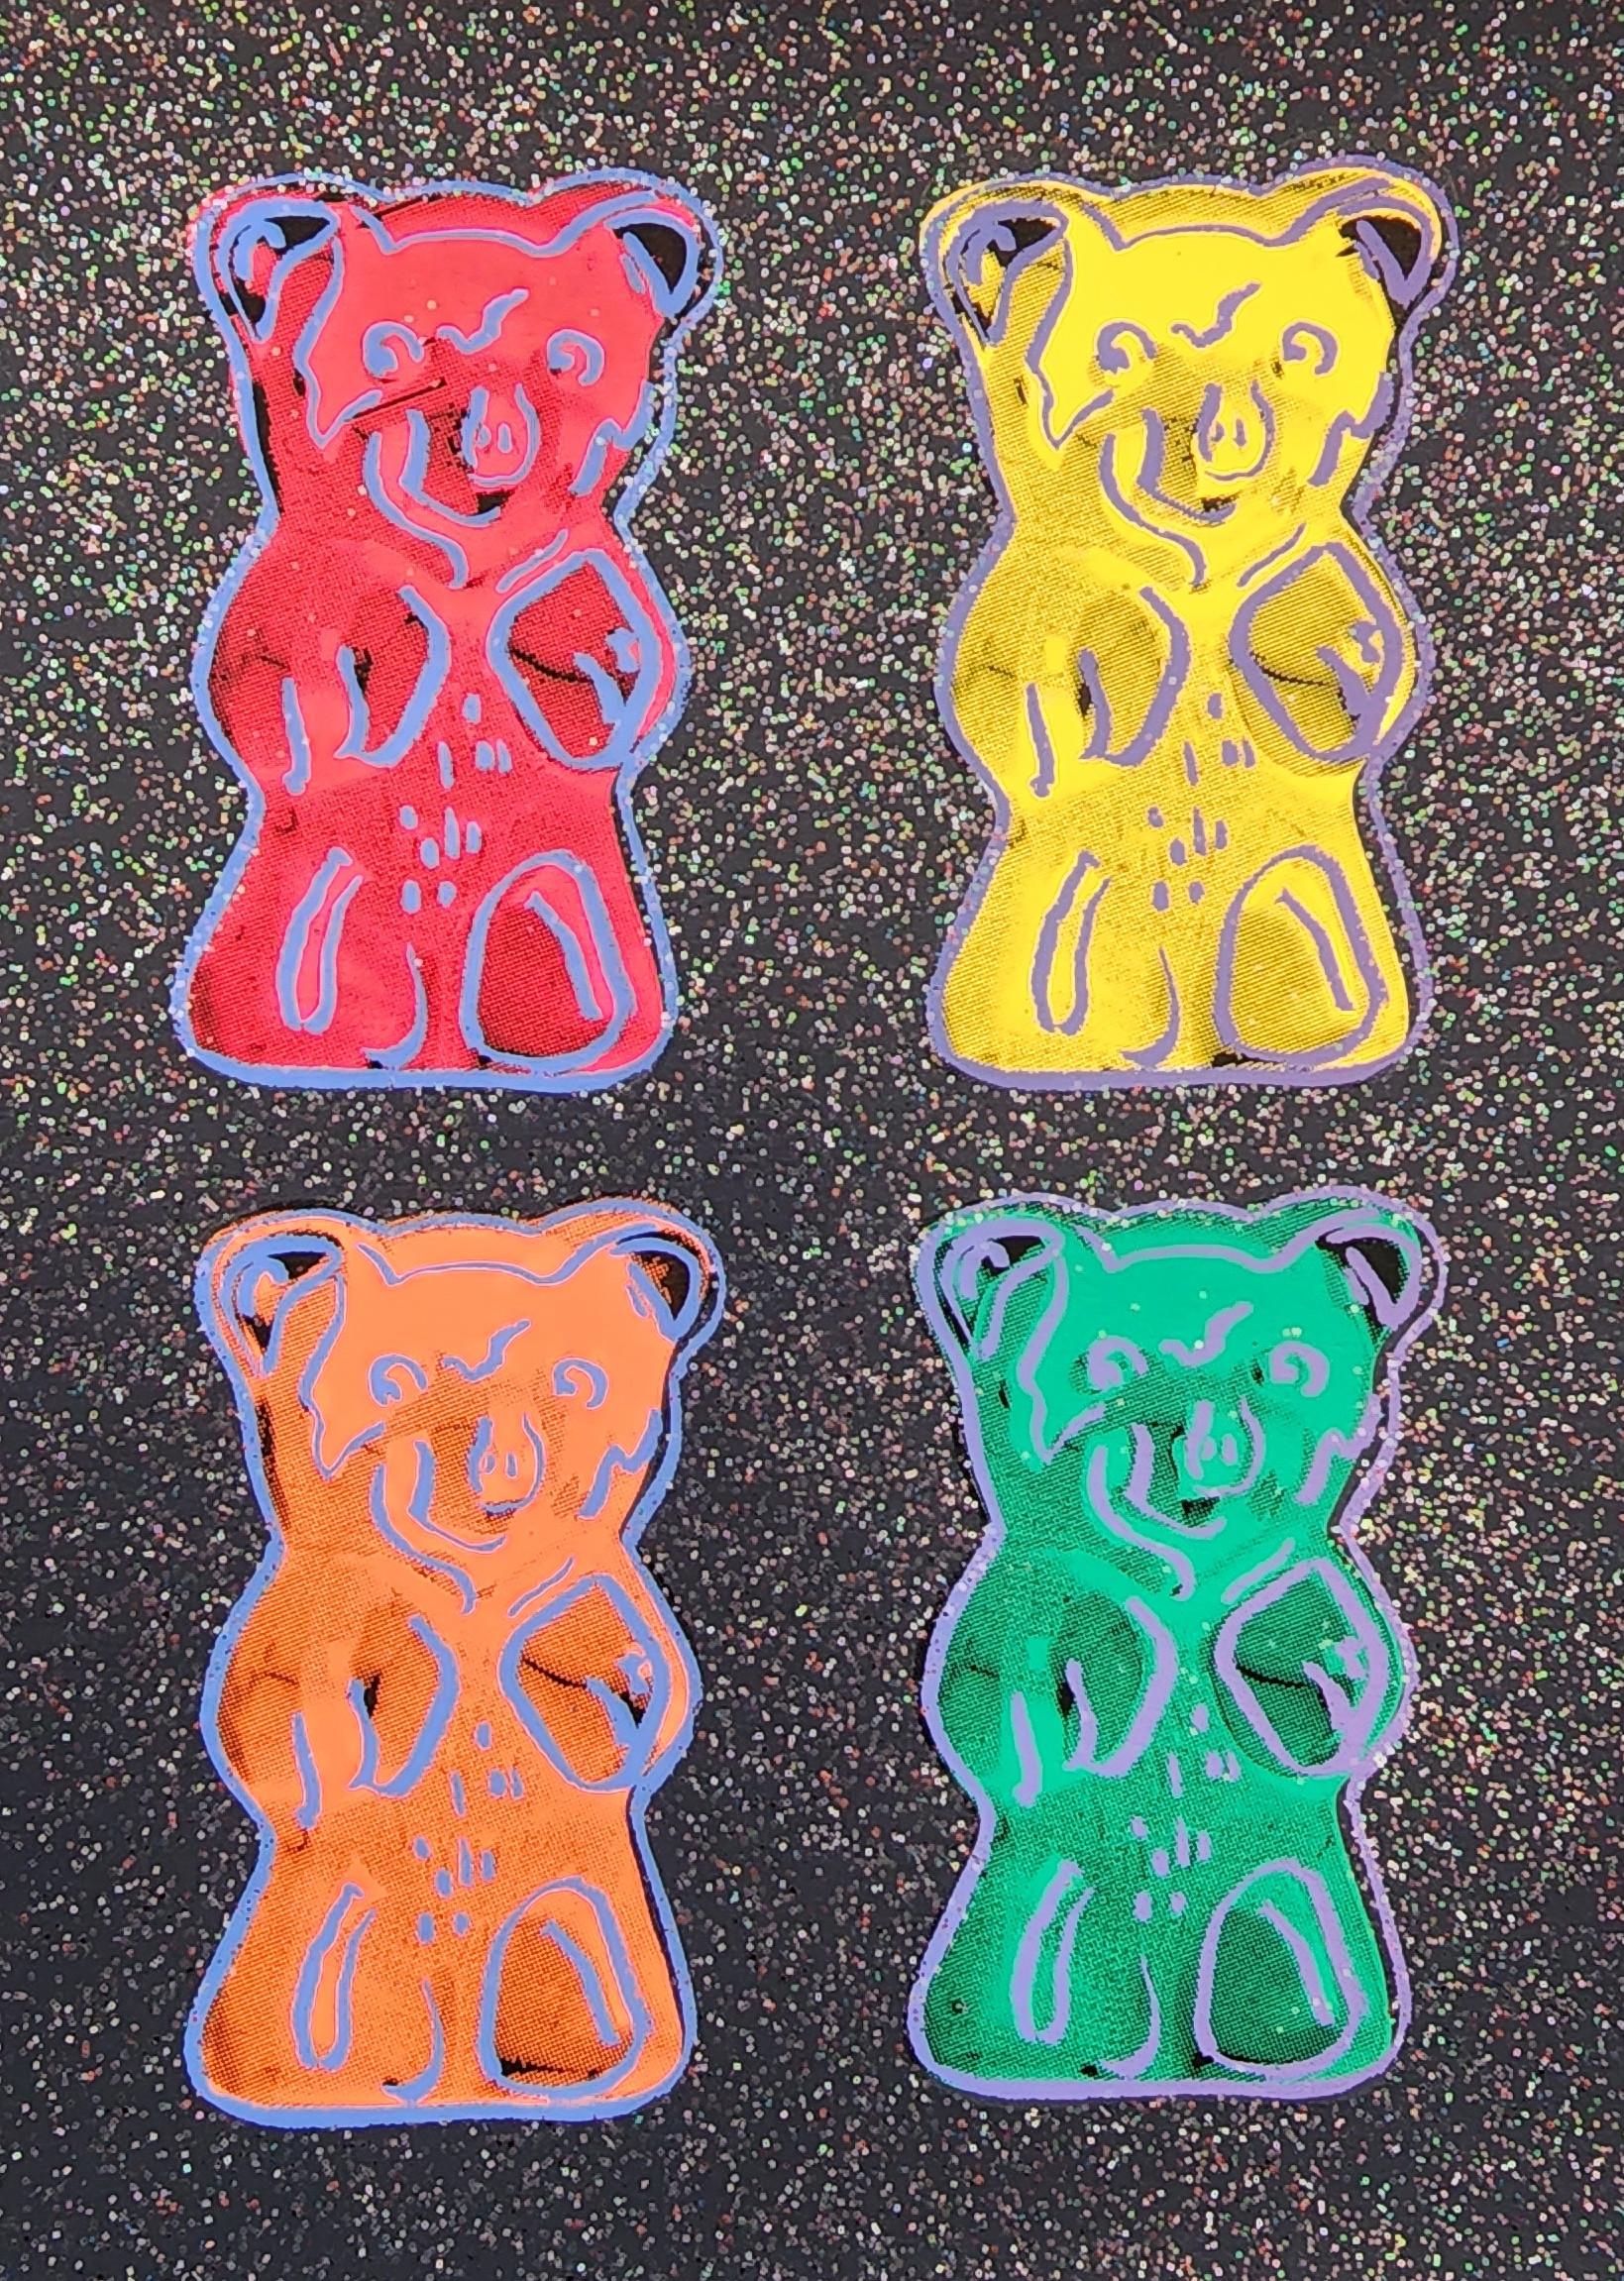 Gummi Bears #2 with Glitter Small - BLACK (Pop Art, Andy Warhol)  - Print by Jurgen Kuhl 